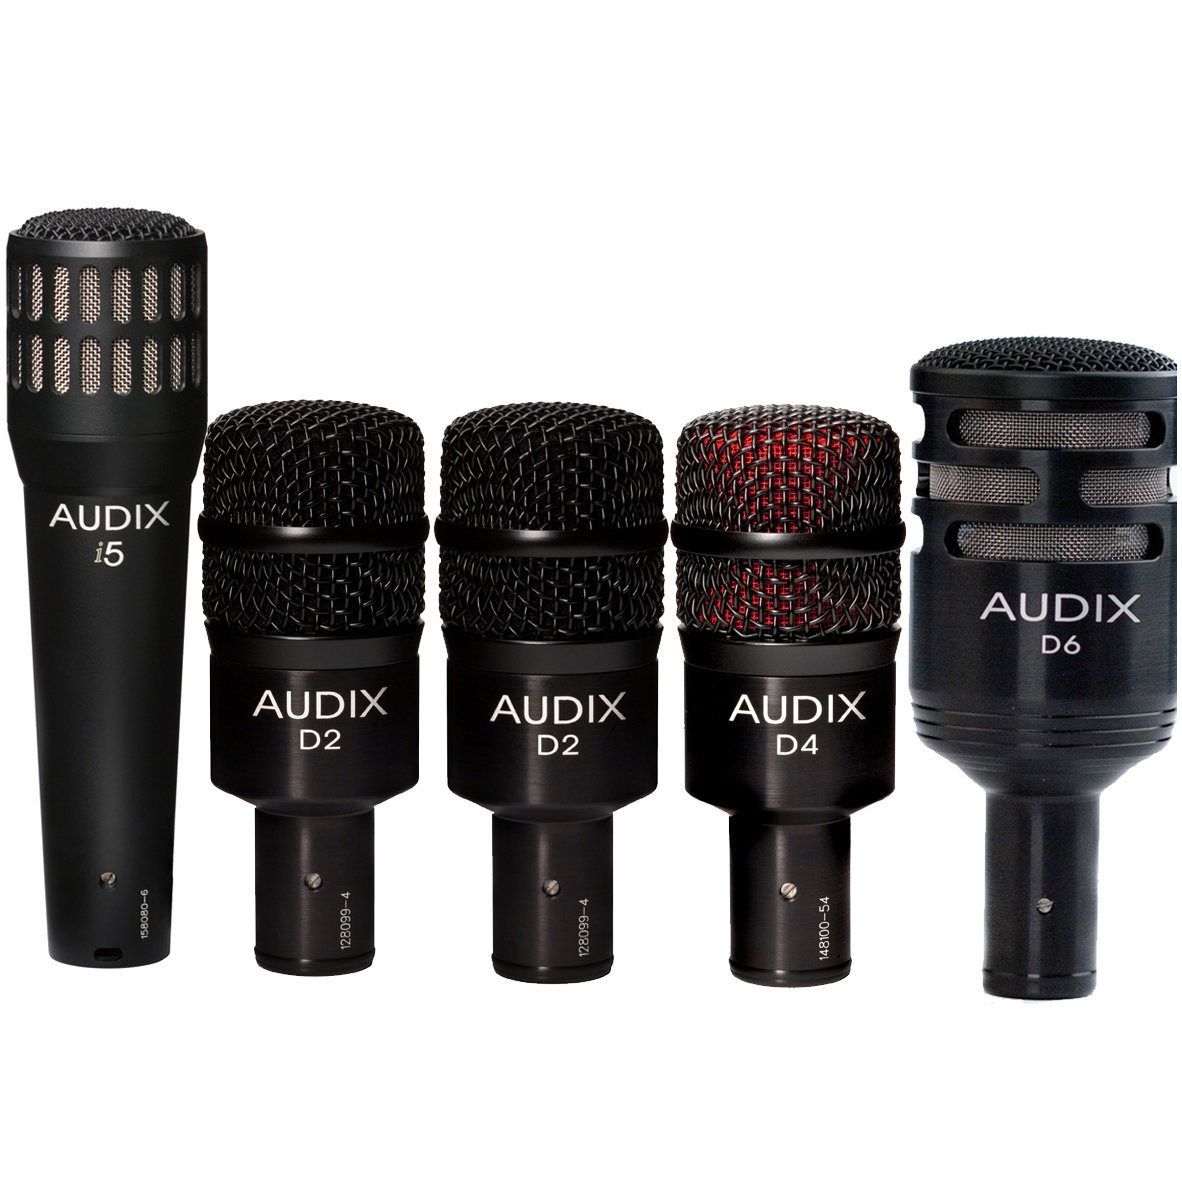  Bộ micro trống Audix DP5A (5 mic) 